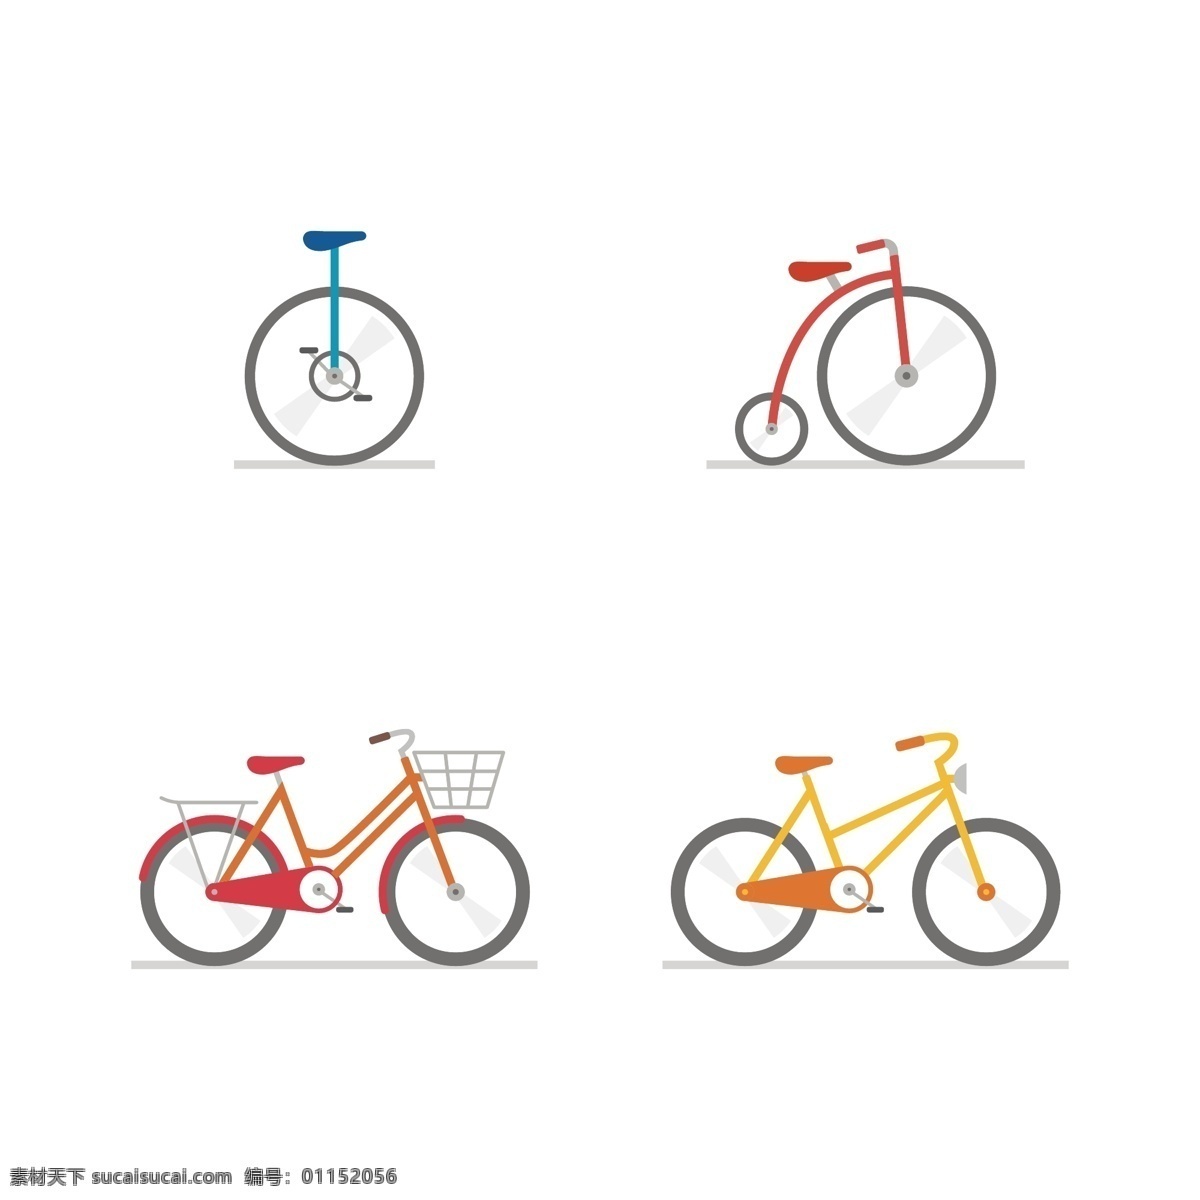 自行车 发展史 矢量 自行车图标 简约 扁平 单车 图标 共享 黄色 ofo车 共享单车 代步工具